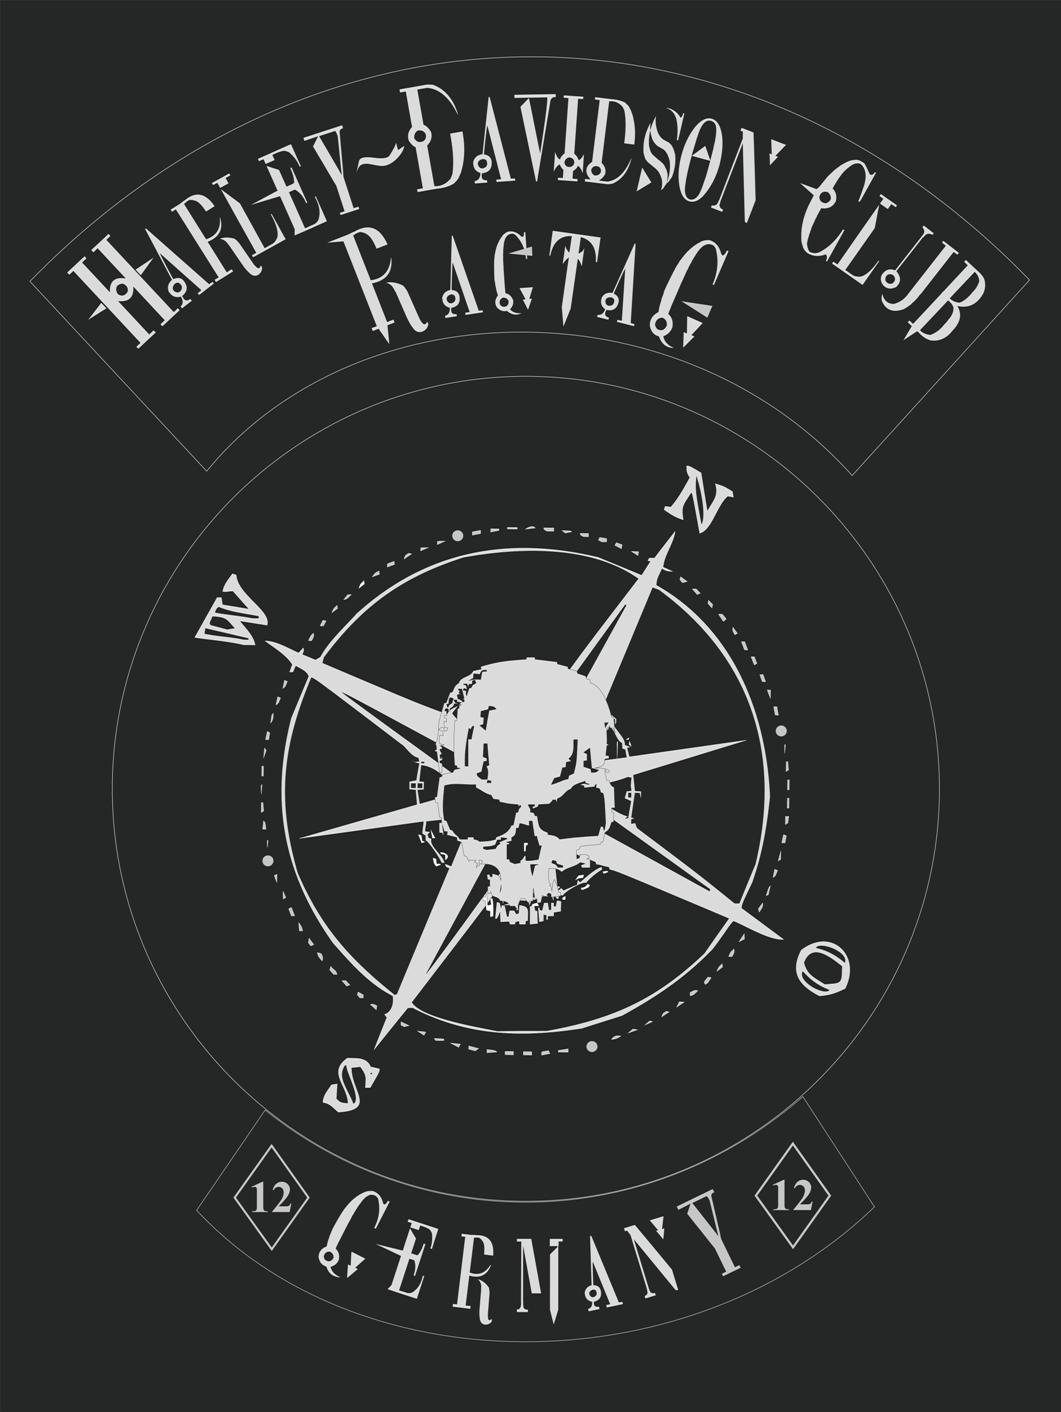 Harley Davidson Club RagTag Logo